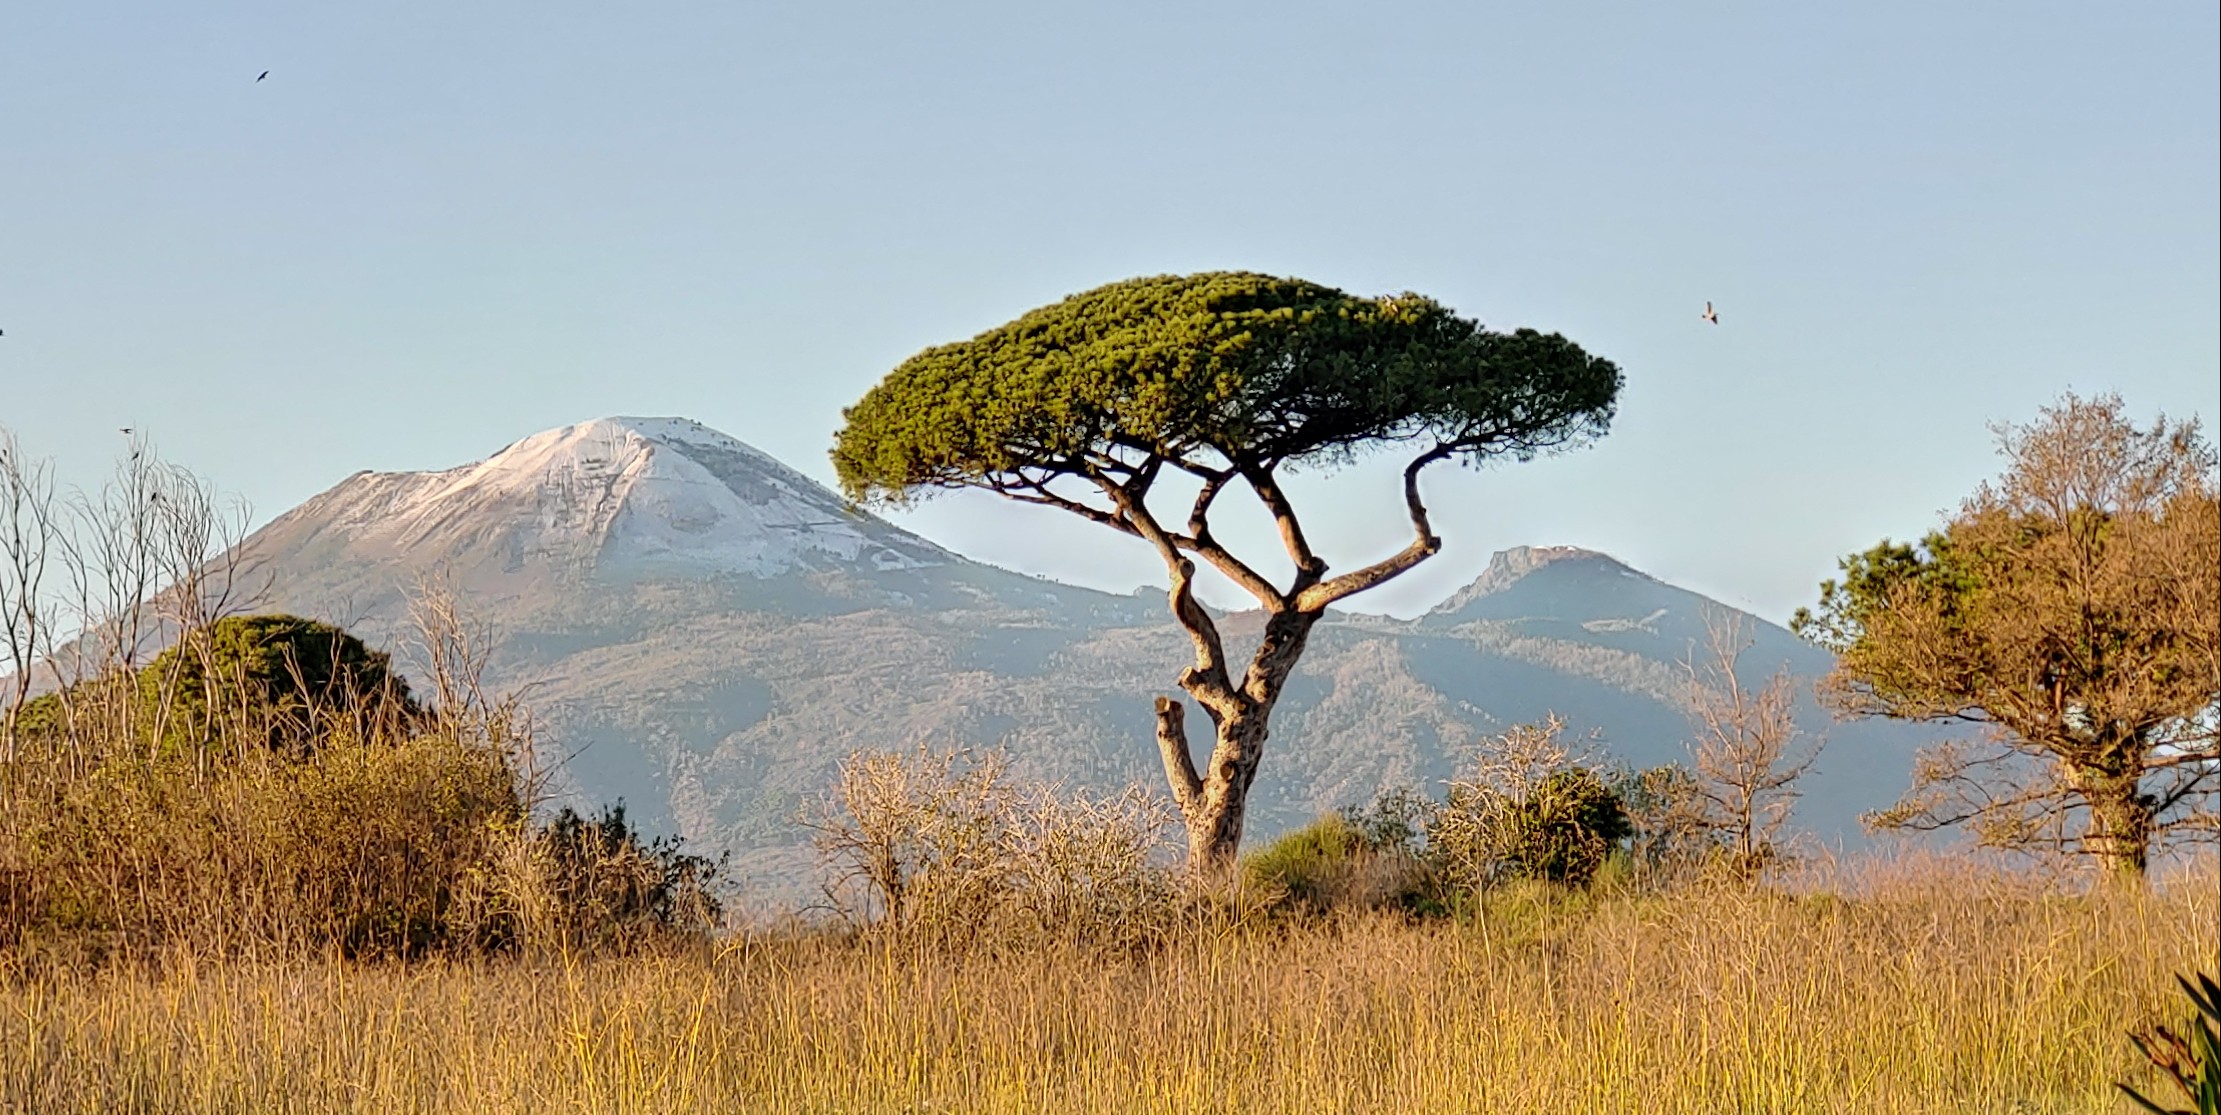 Vue du Vésuve enneigé depuis le site de Pompéi.